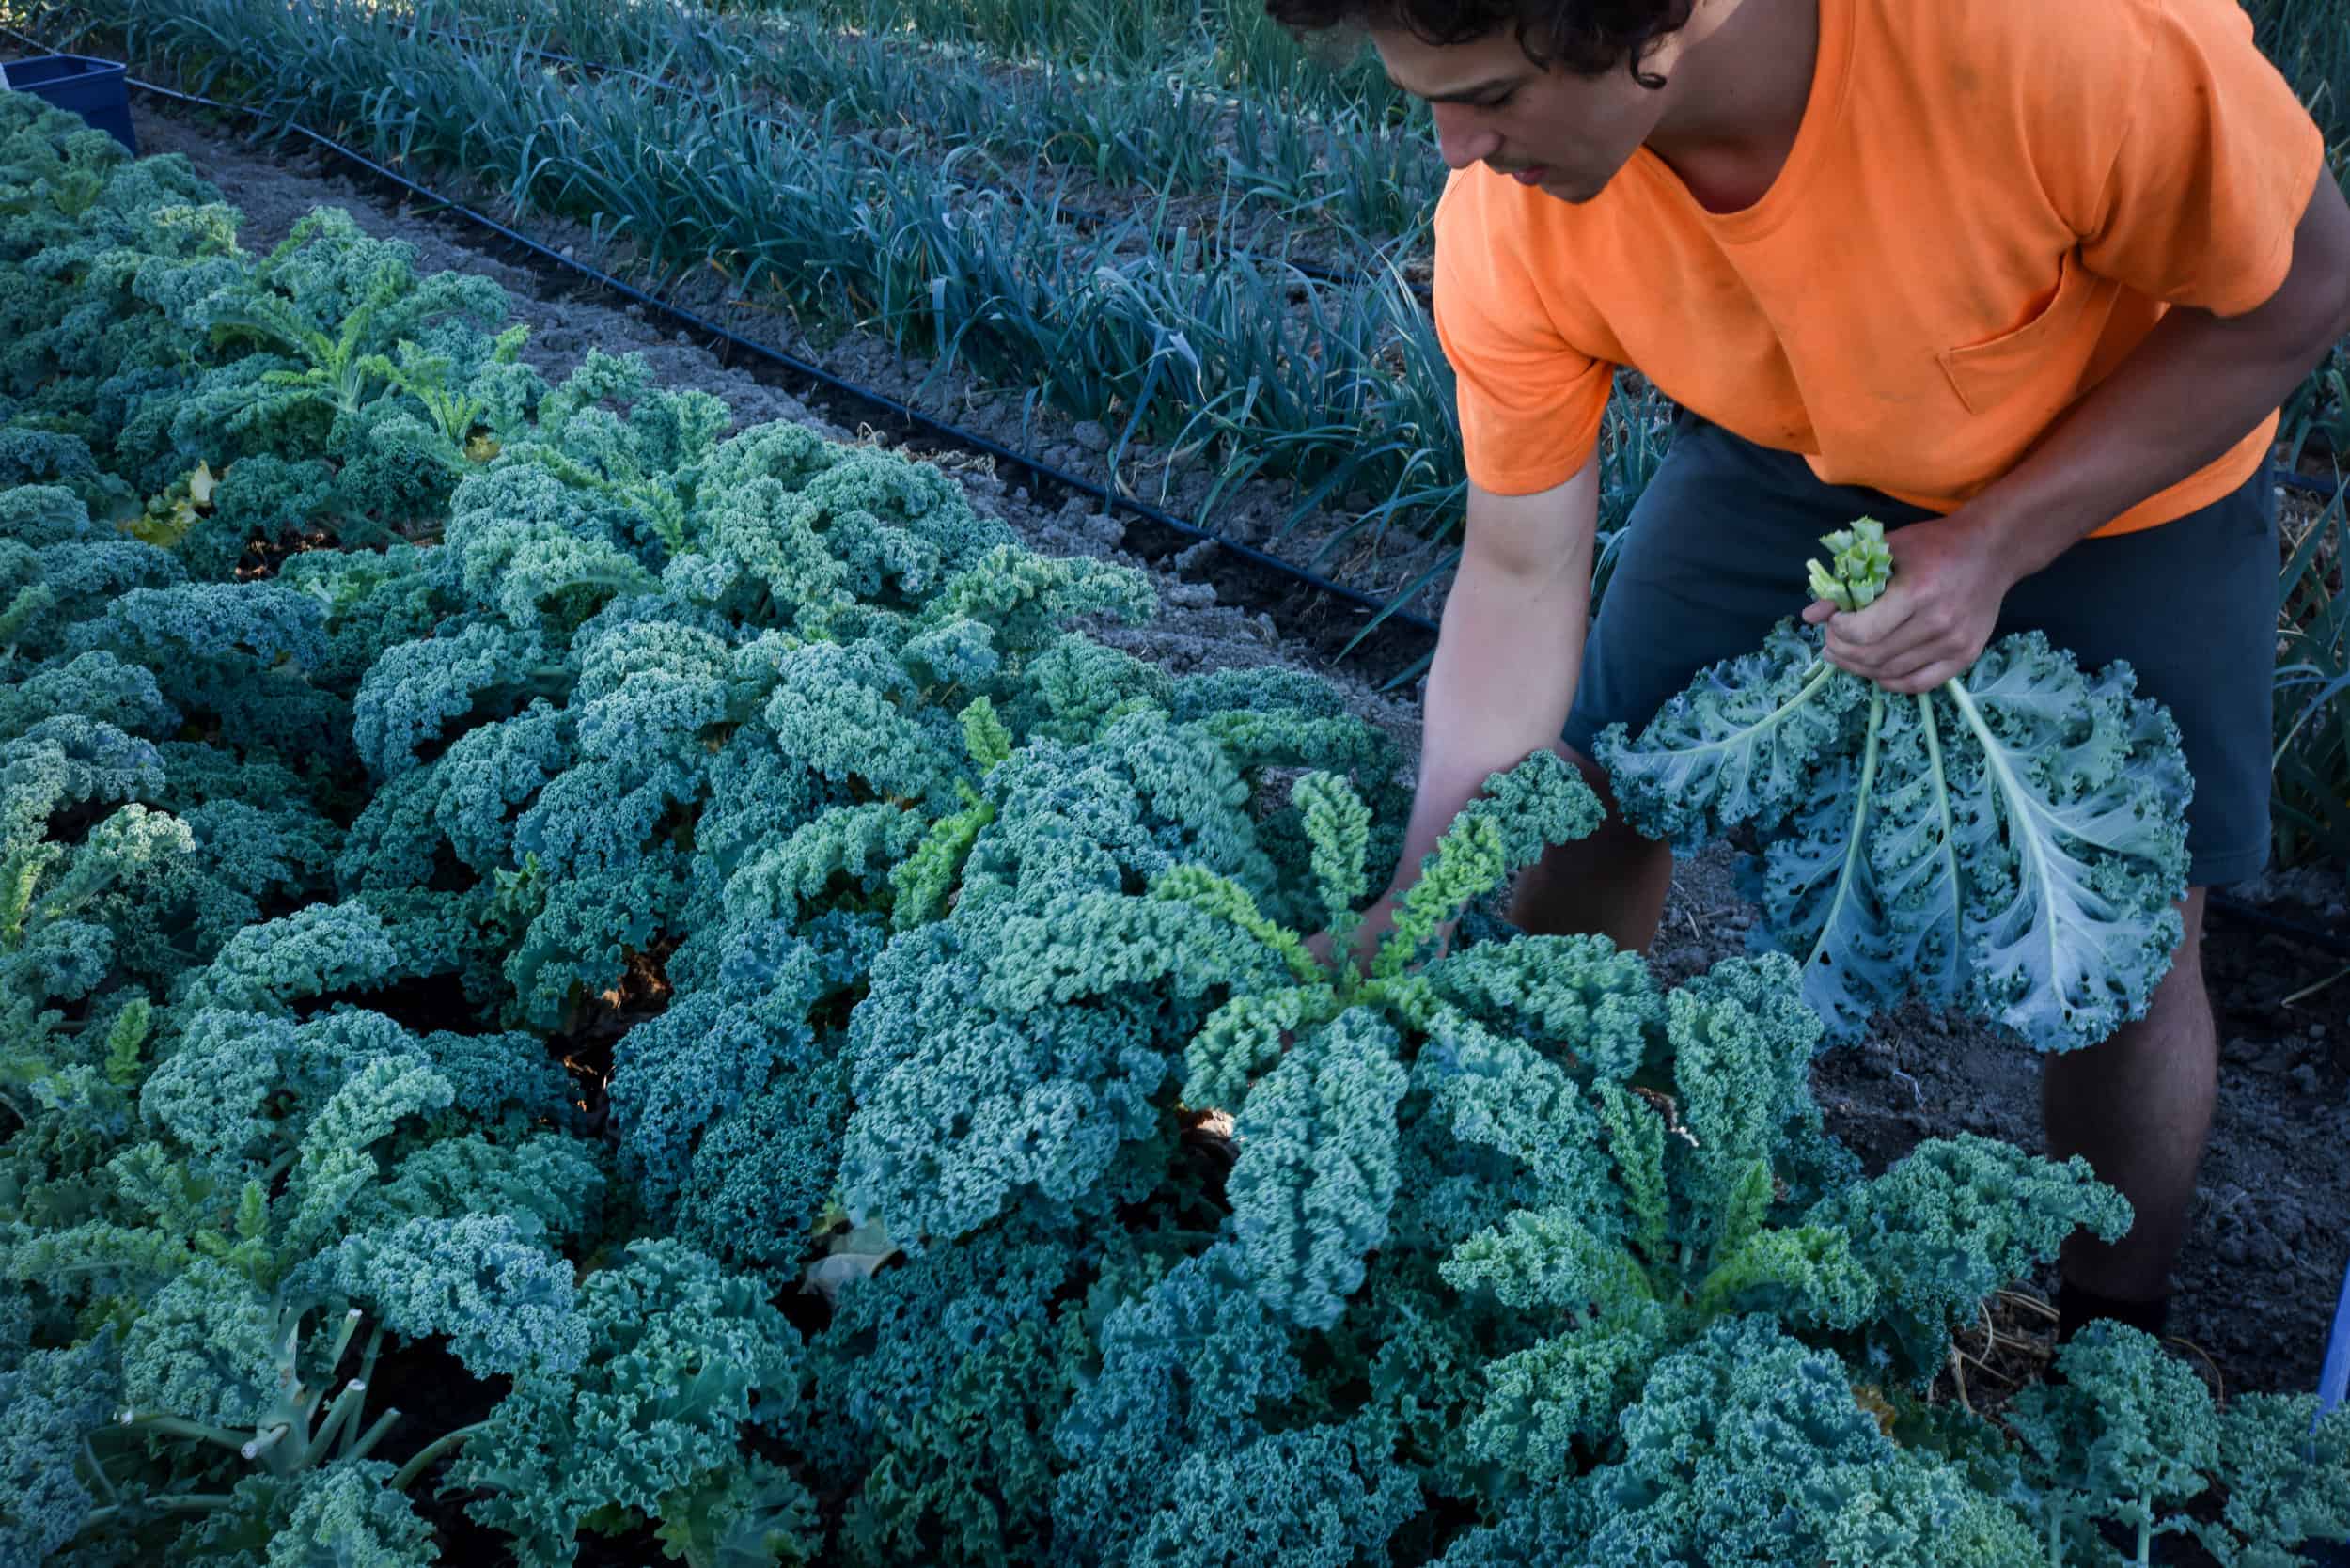 A man picking kale in a field.